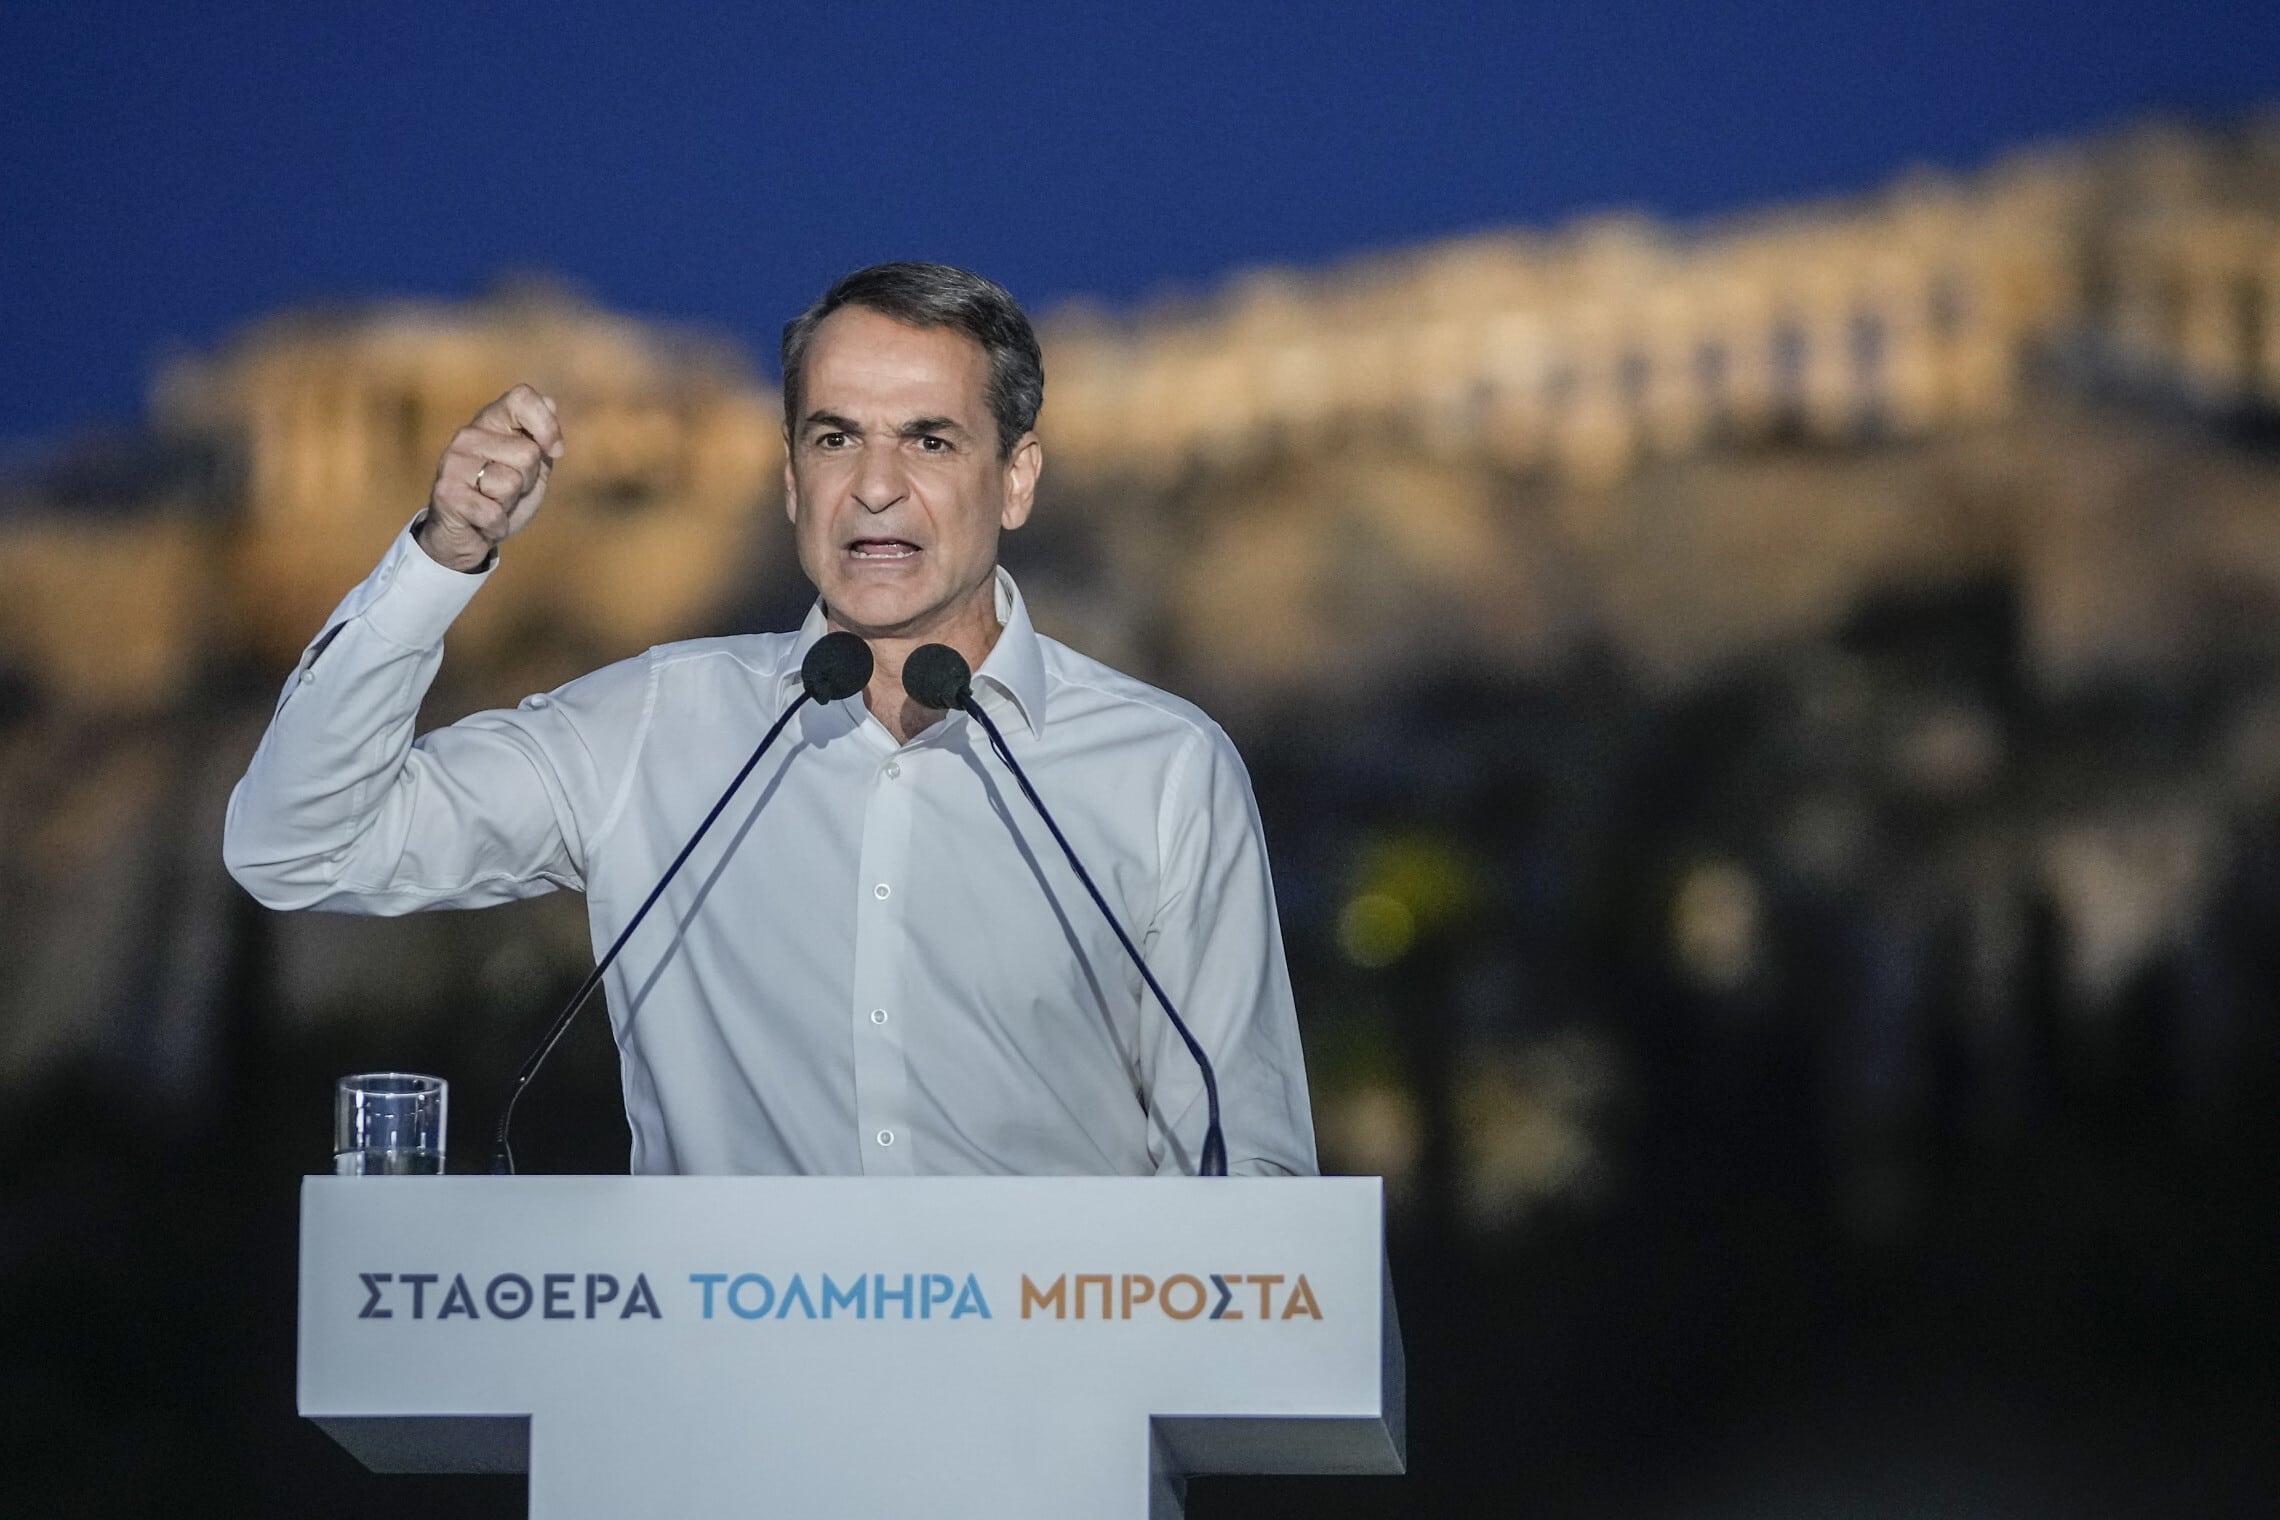 ראש ממשלת יוון קיריאקוס מיצוטאקיס בעצרת בחירות שקיים למרגלות האקרופוליס באתונה, 19 במאי 2023 (צילום: AP Photo/Thanassis Stavrakis)